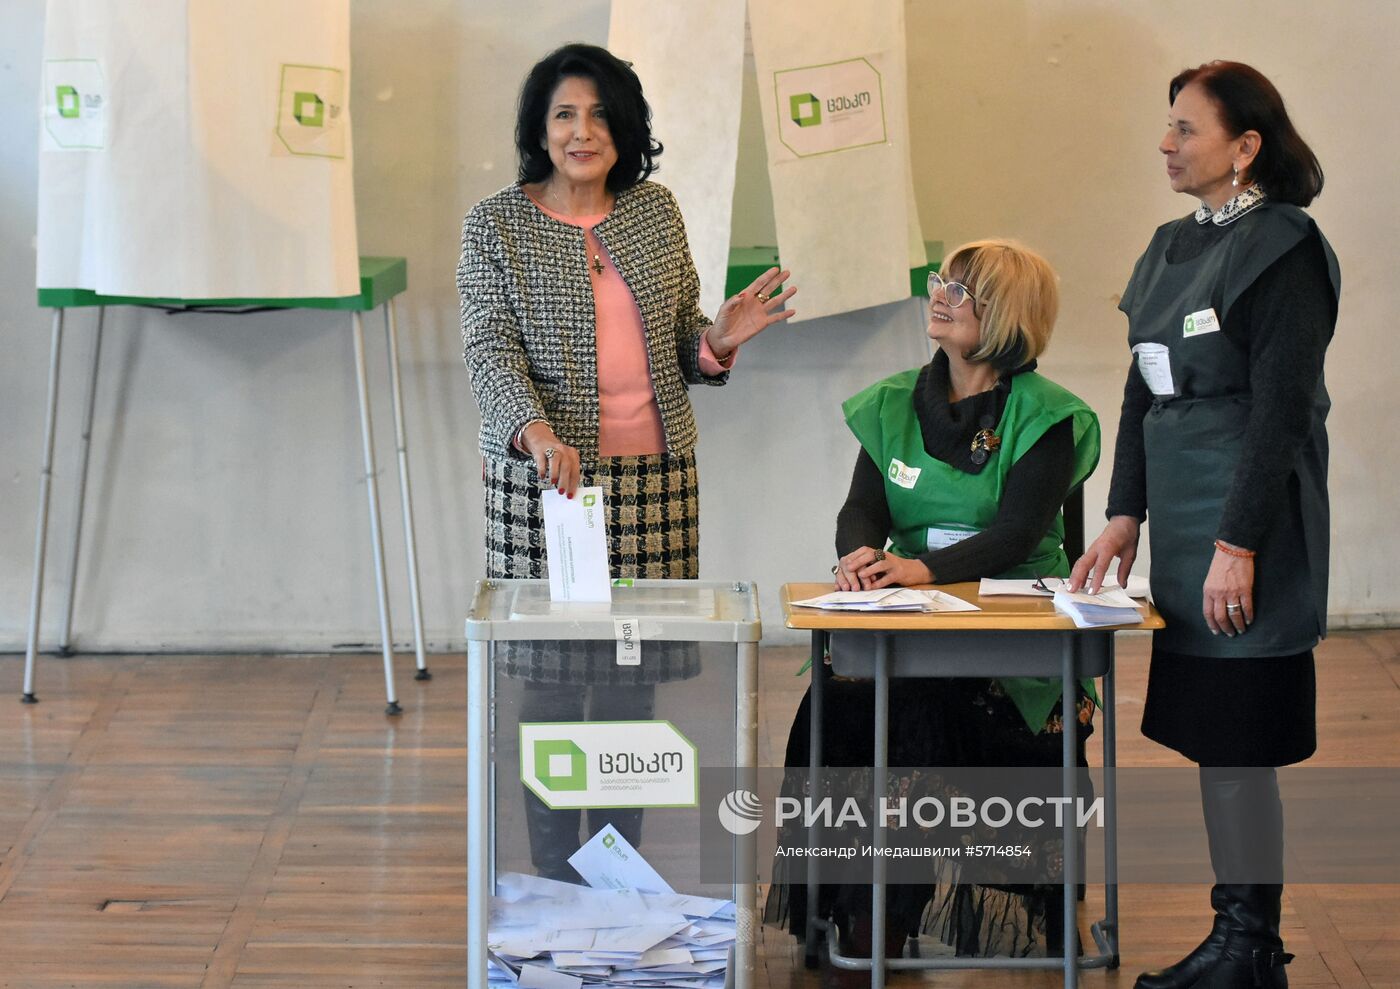 2-й тур президентских выборов в Грузии